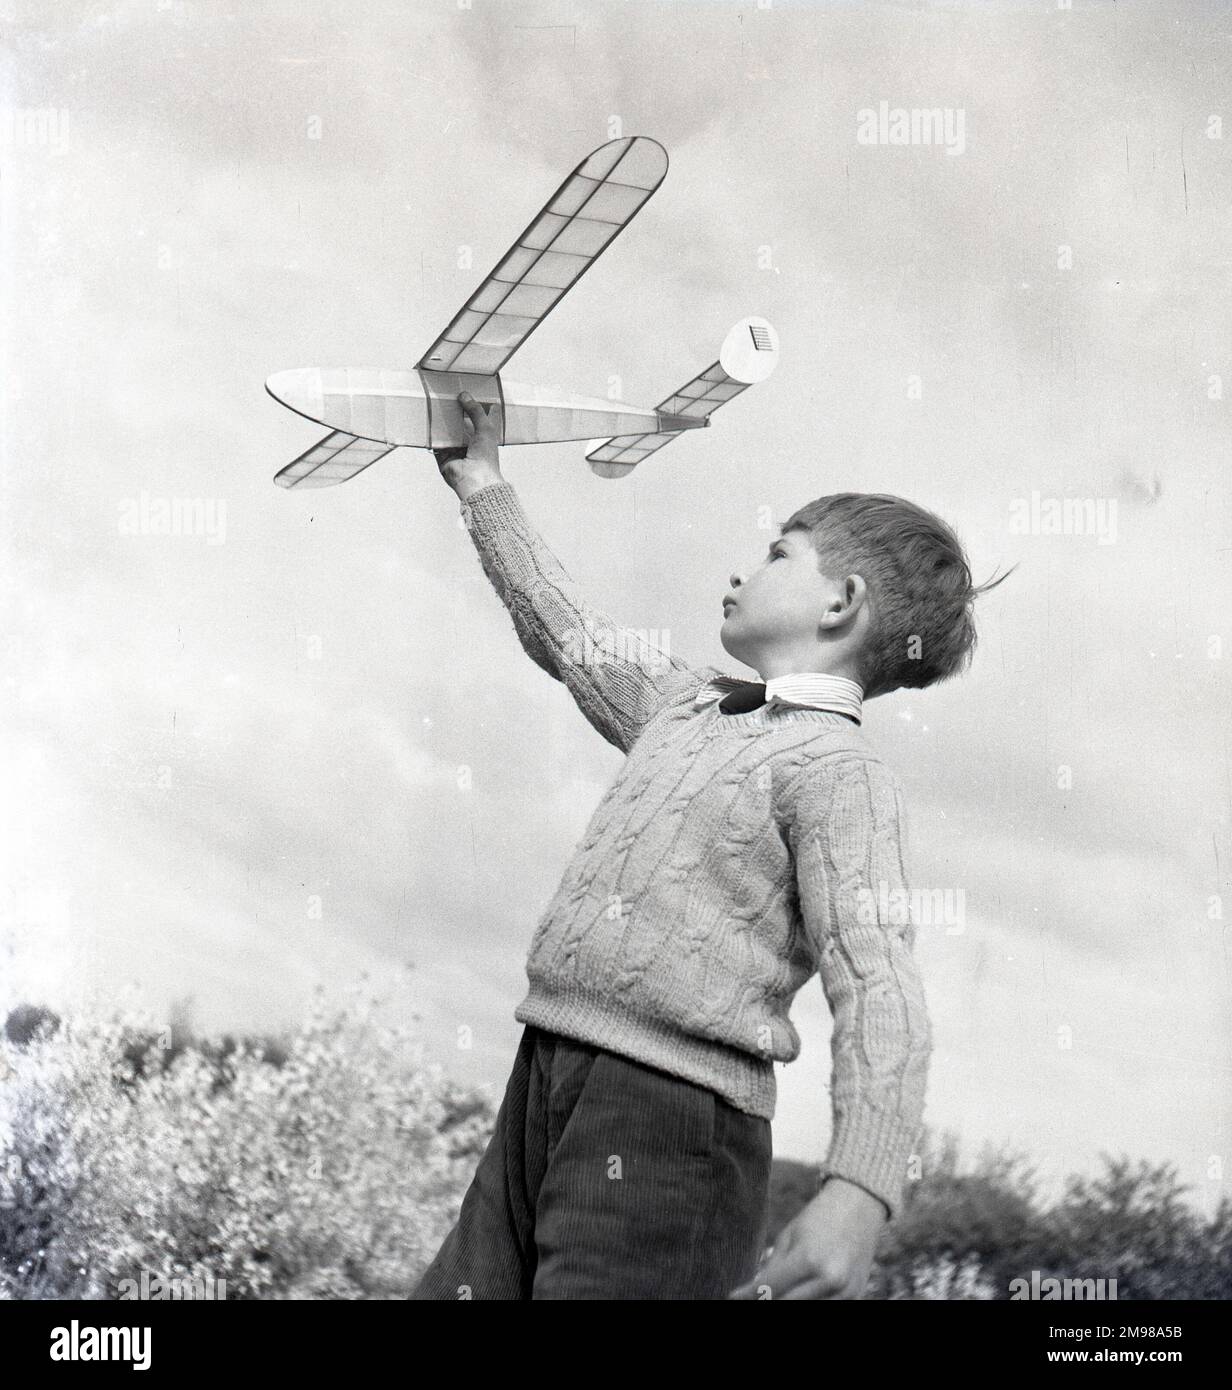 Garçon avec un avion modèle -- une d'une série d'images prises par Adams pour la campagne britannique d'après-guerre en temps de paix. Banque D'Images